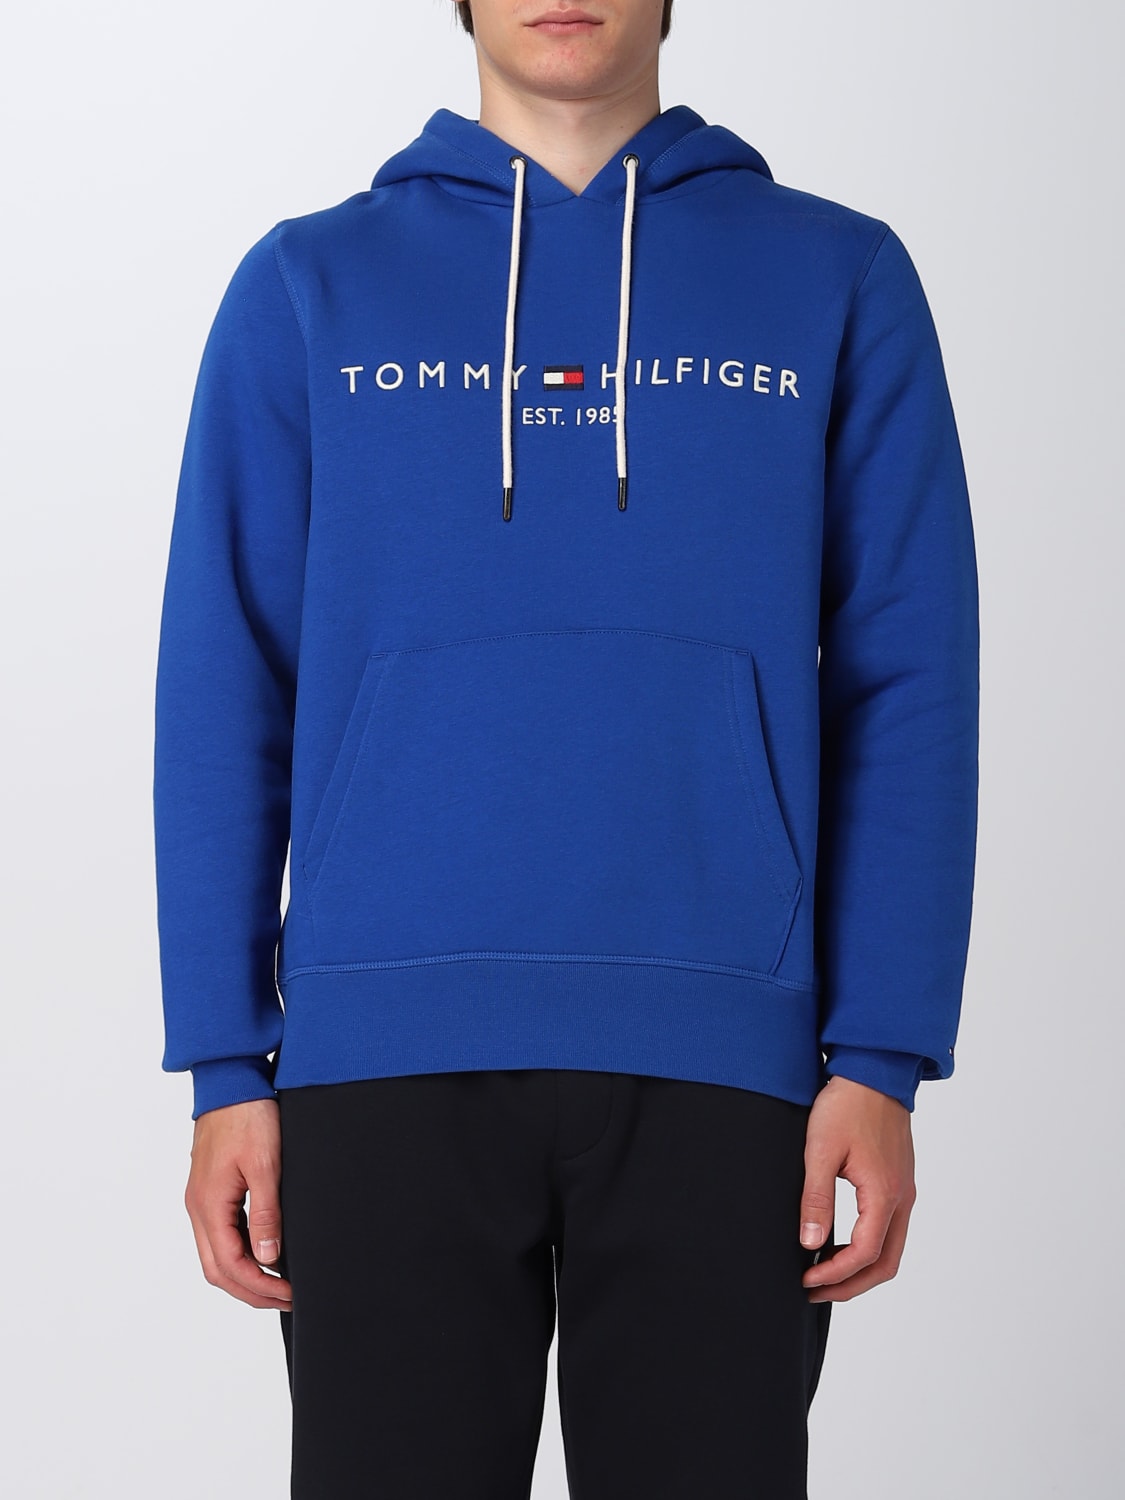 TOMMY HILFIGER: sweatshirt in cotton blend - Royal Blue  TOMMY HILFIGER  sweatshirt MW0MW11599 online at